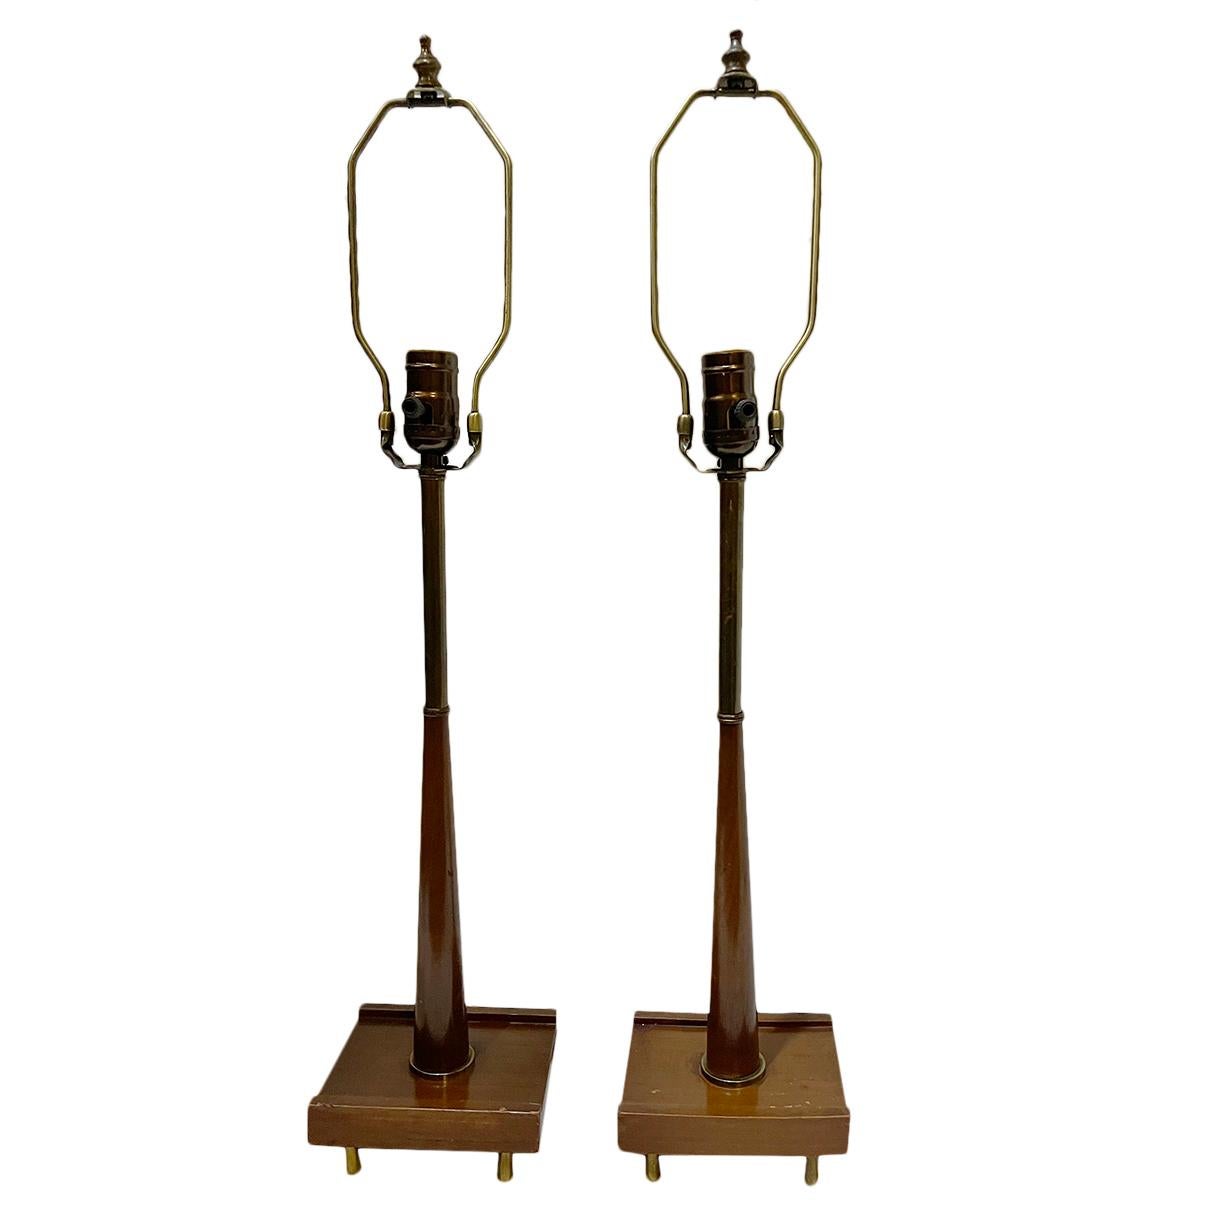 Zwei moderne dänische Holz-Tischlampen aus den 1950er Jahren.

Abmessungen:
Höhe des Körpers: 18,5